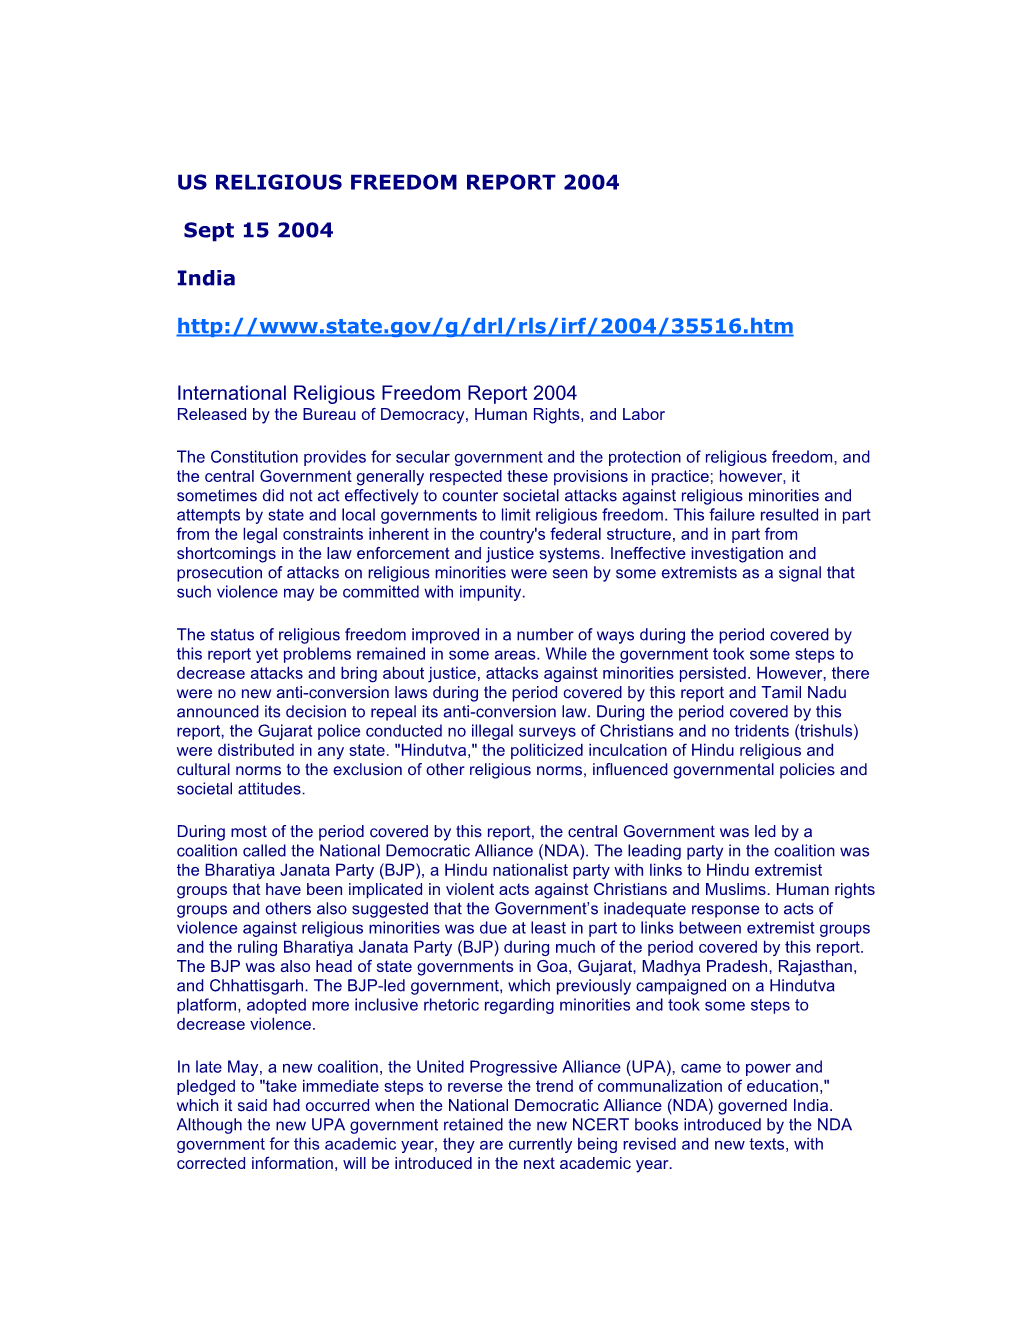 US Religious Freedom Report